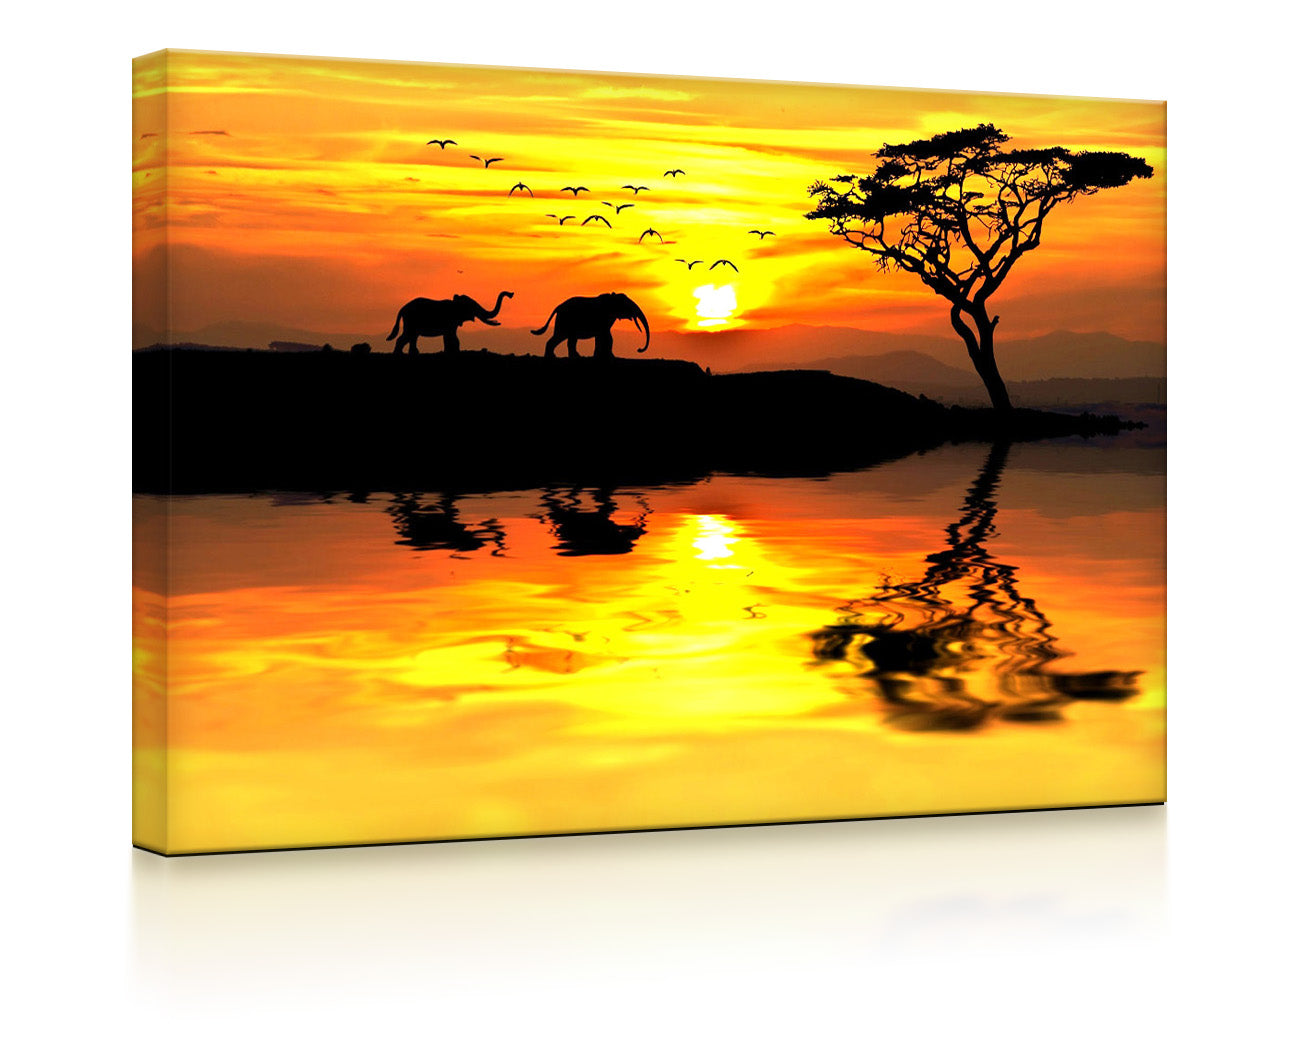 Elefanten in afrikanischer Steppe als leuchtbild